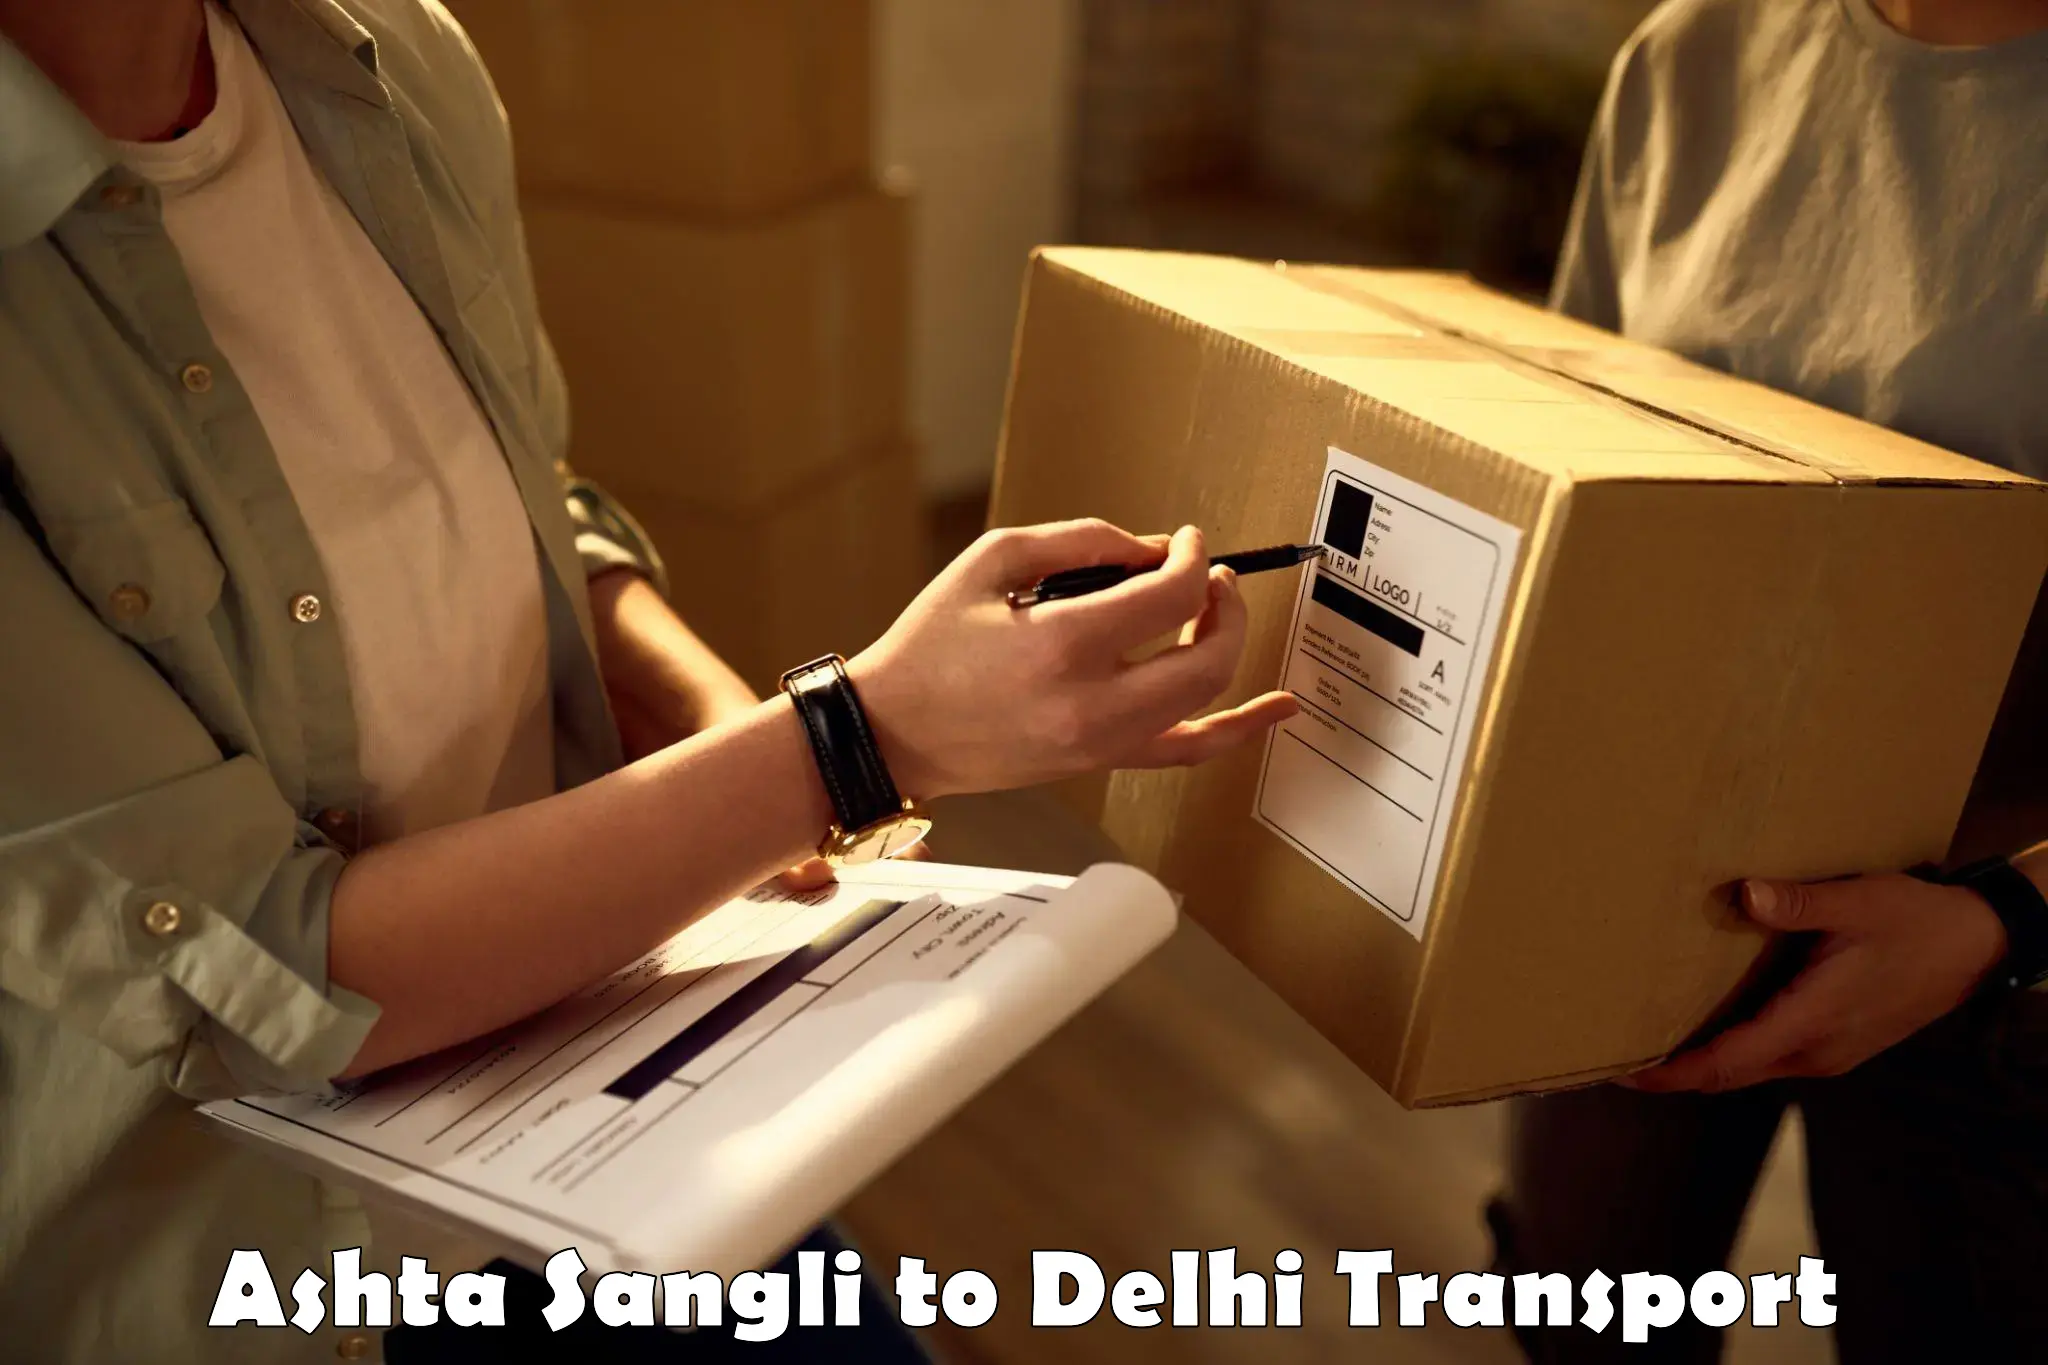 India truck logistics services Ashta Sangli to Delhi Technological University DTU